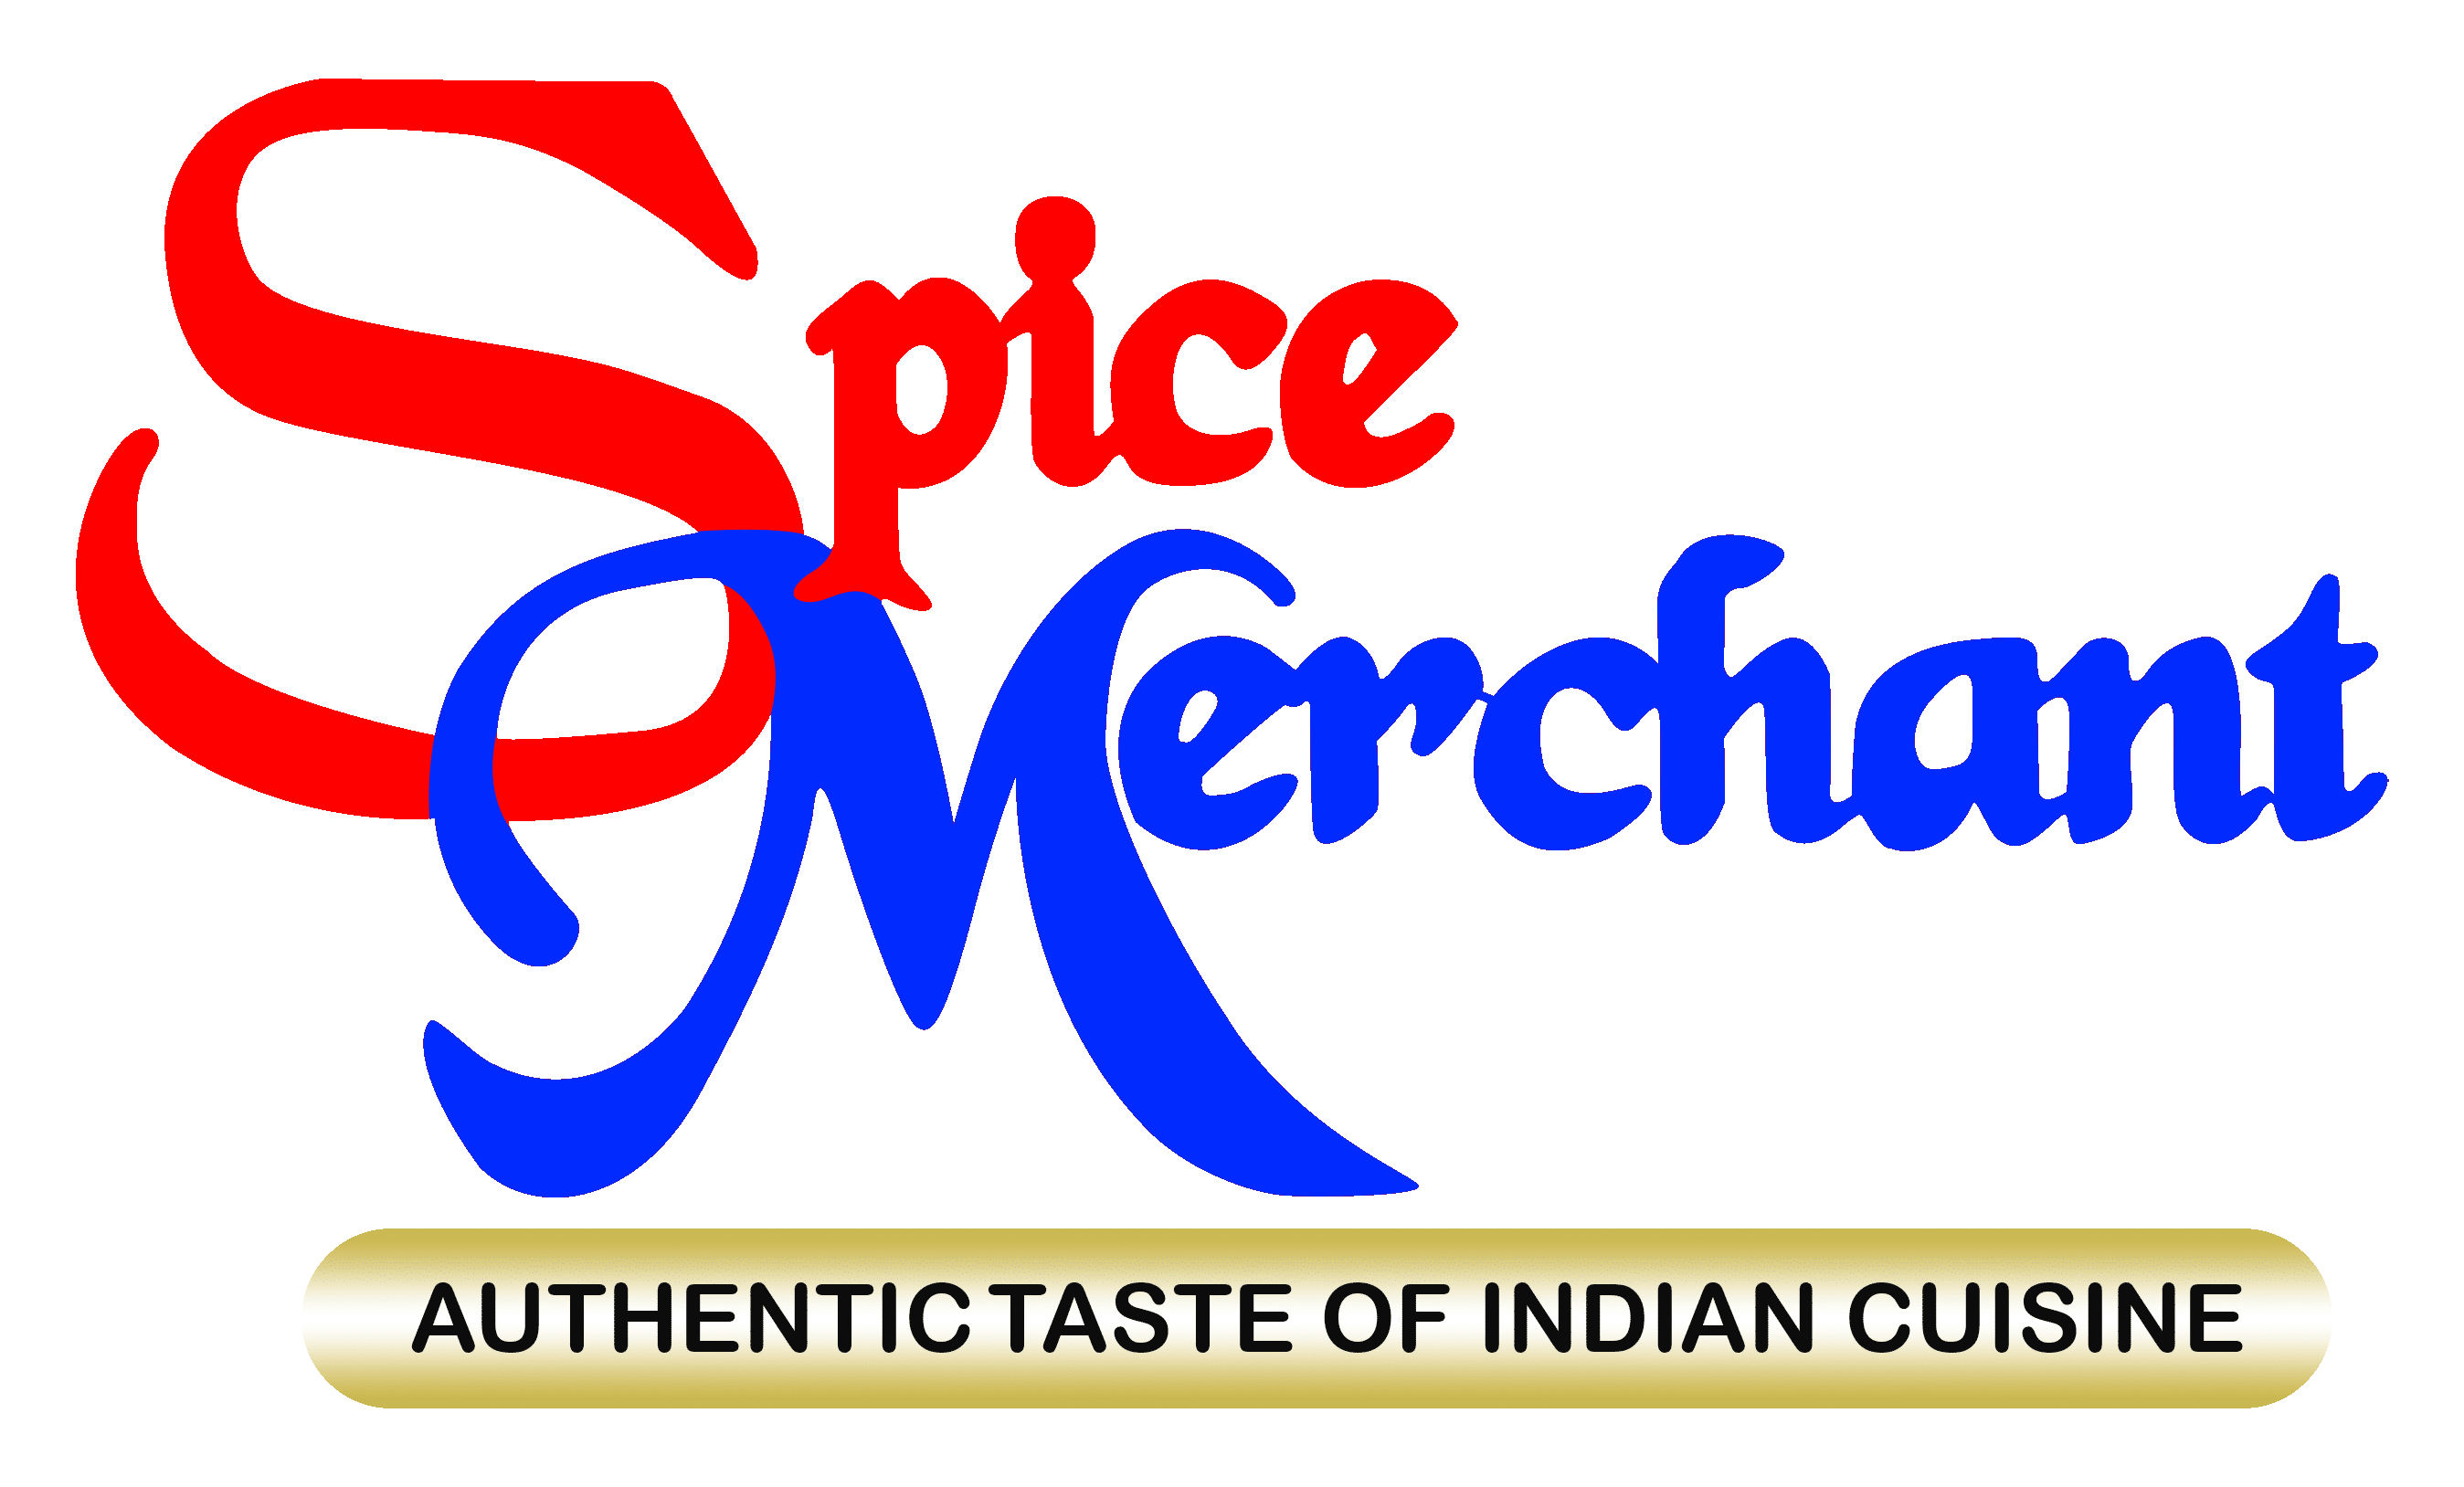 Spice Merchant Dartmouth